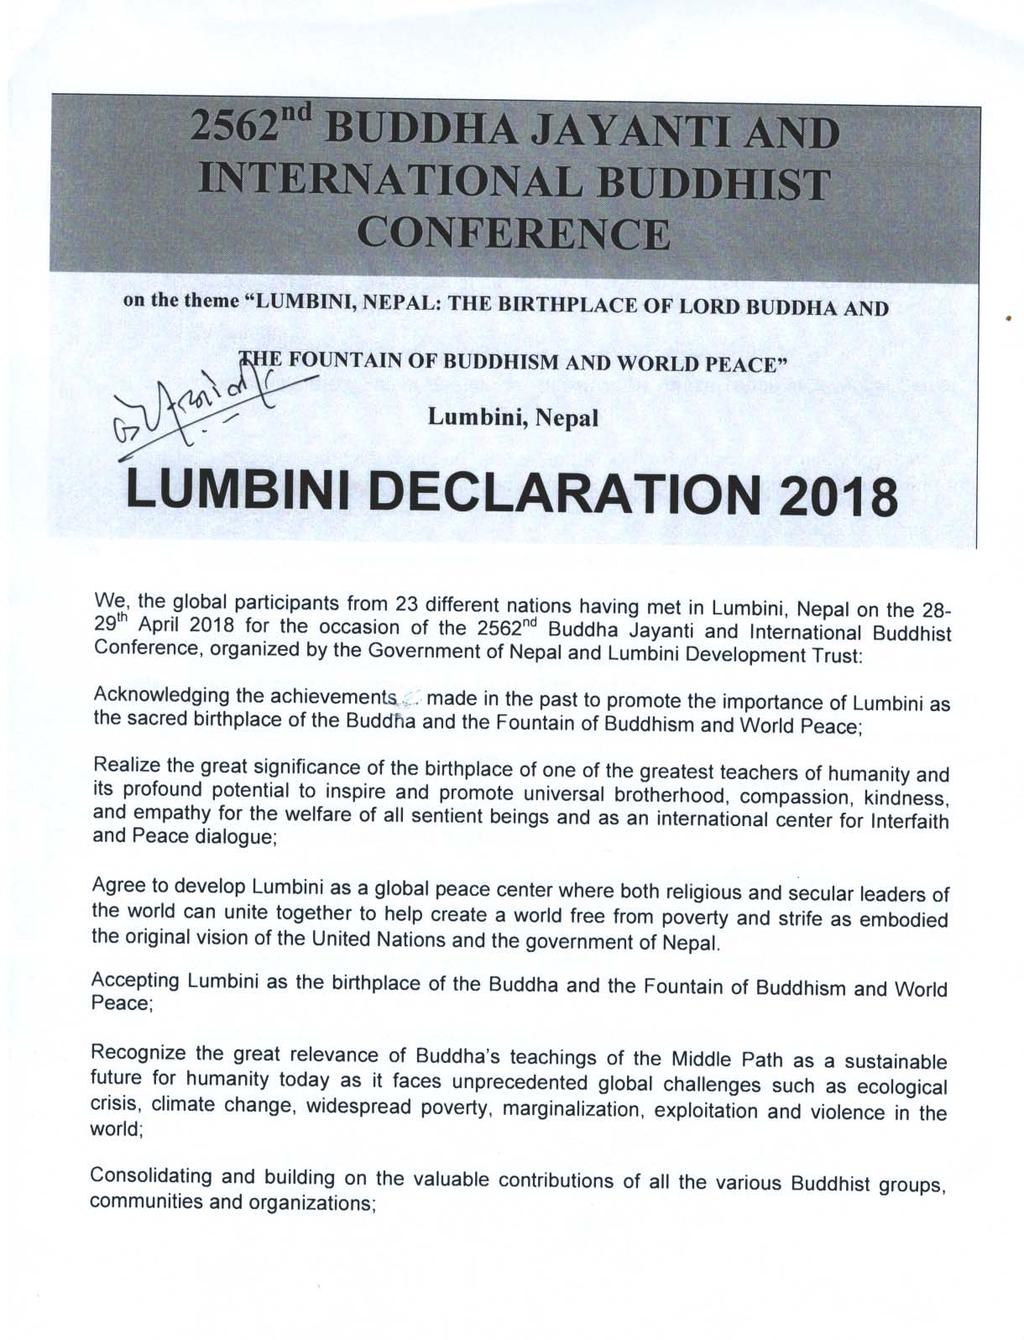 Lumbini, Nepal: The Birthplace of Lord